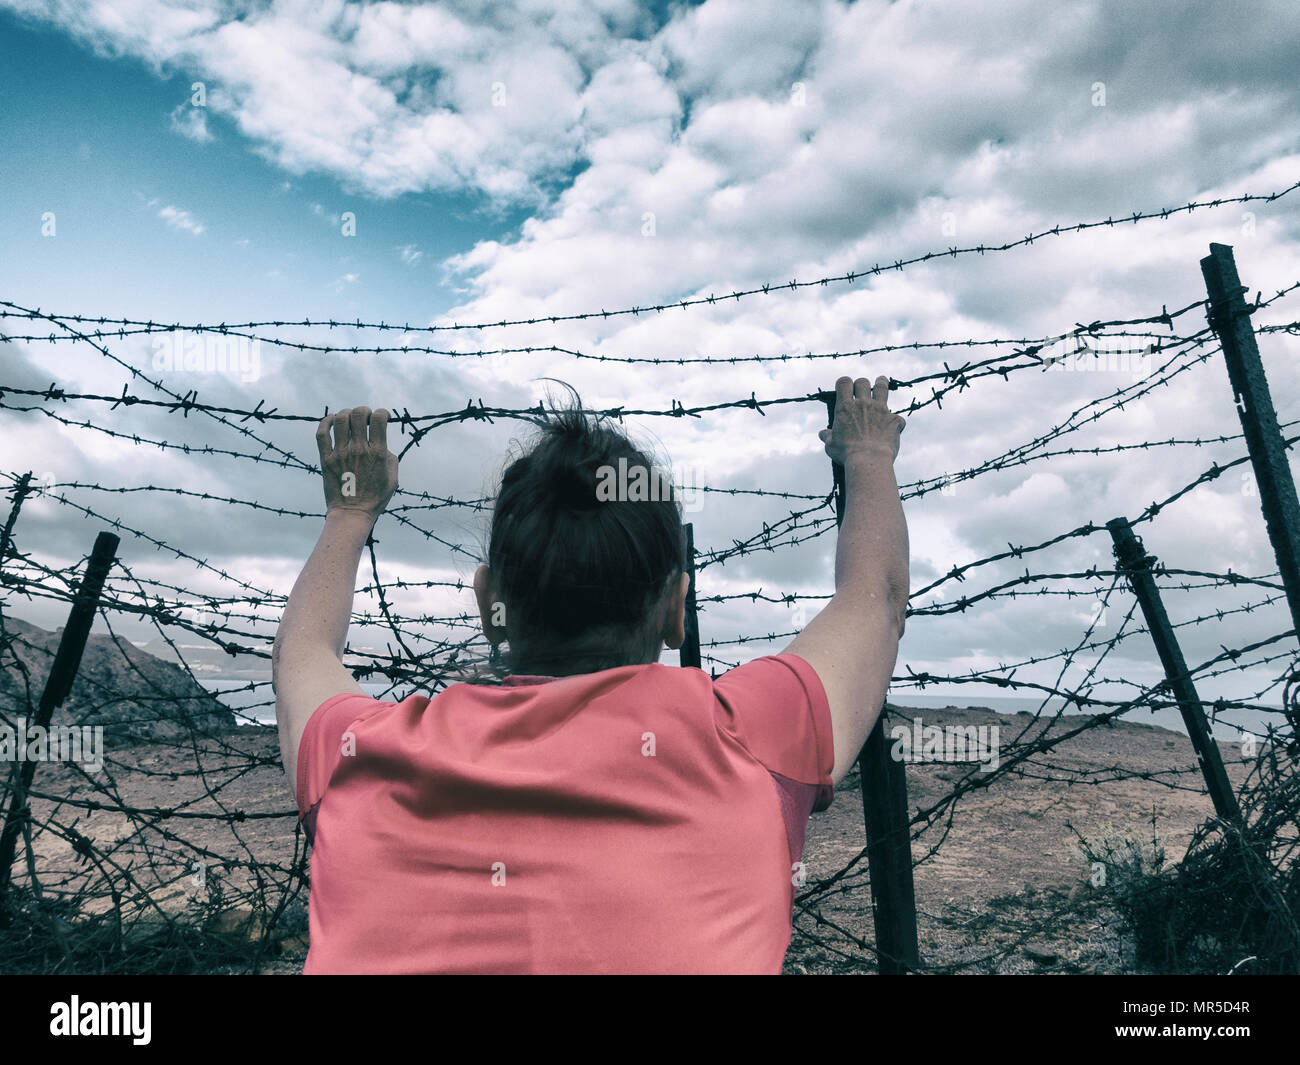 La donna dietro al filo spinato: asilo, Brexit, l' immigrazione clandestina e la tratta di esseri umani e la schiavitù...,il concetto di immagine. Foto Stock